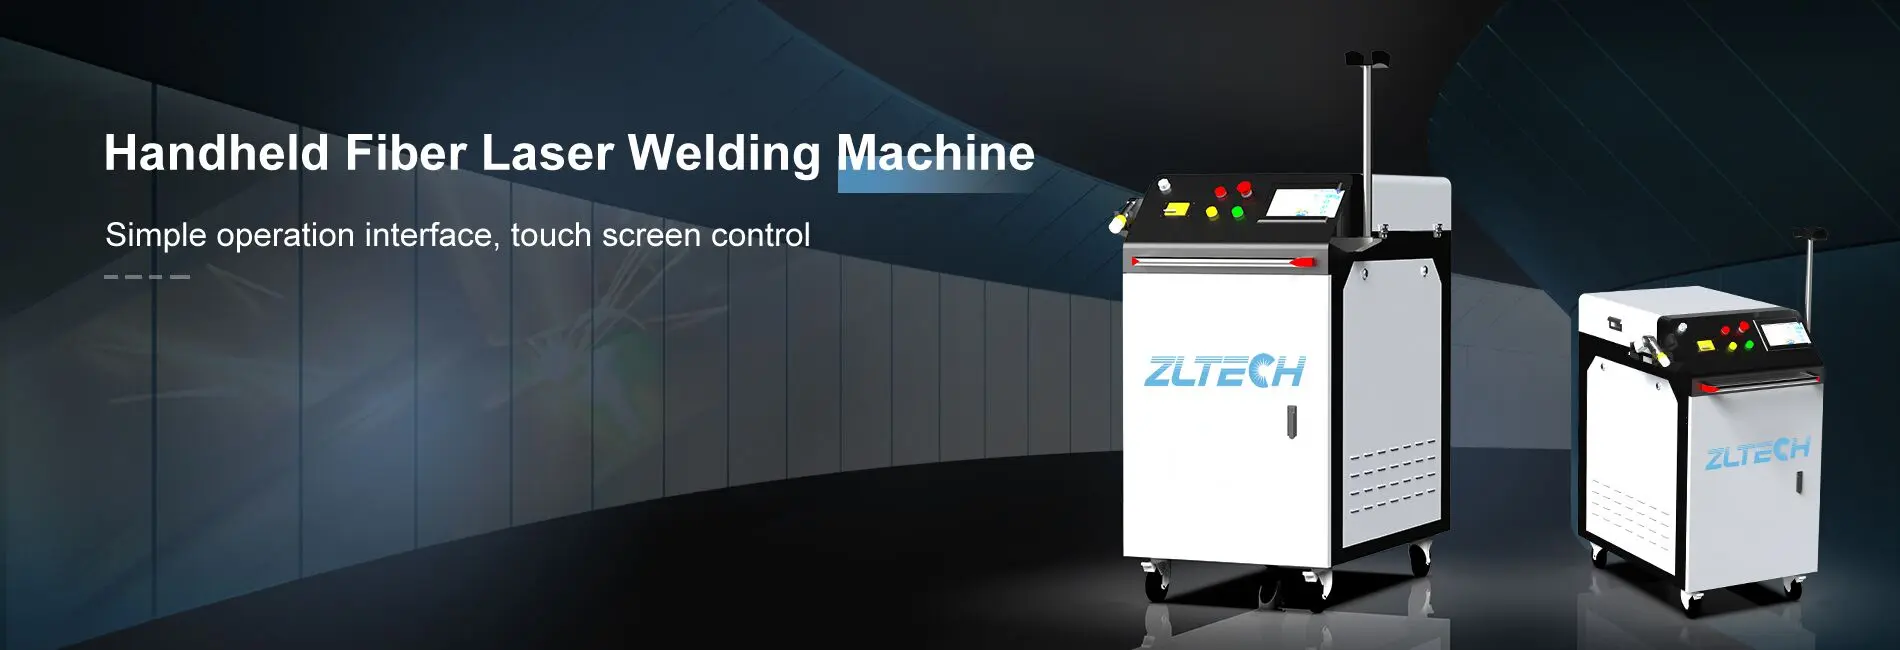 fiber laser cutting machine 2000w